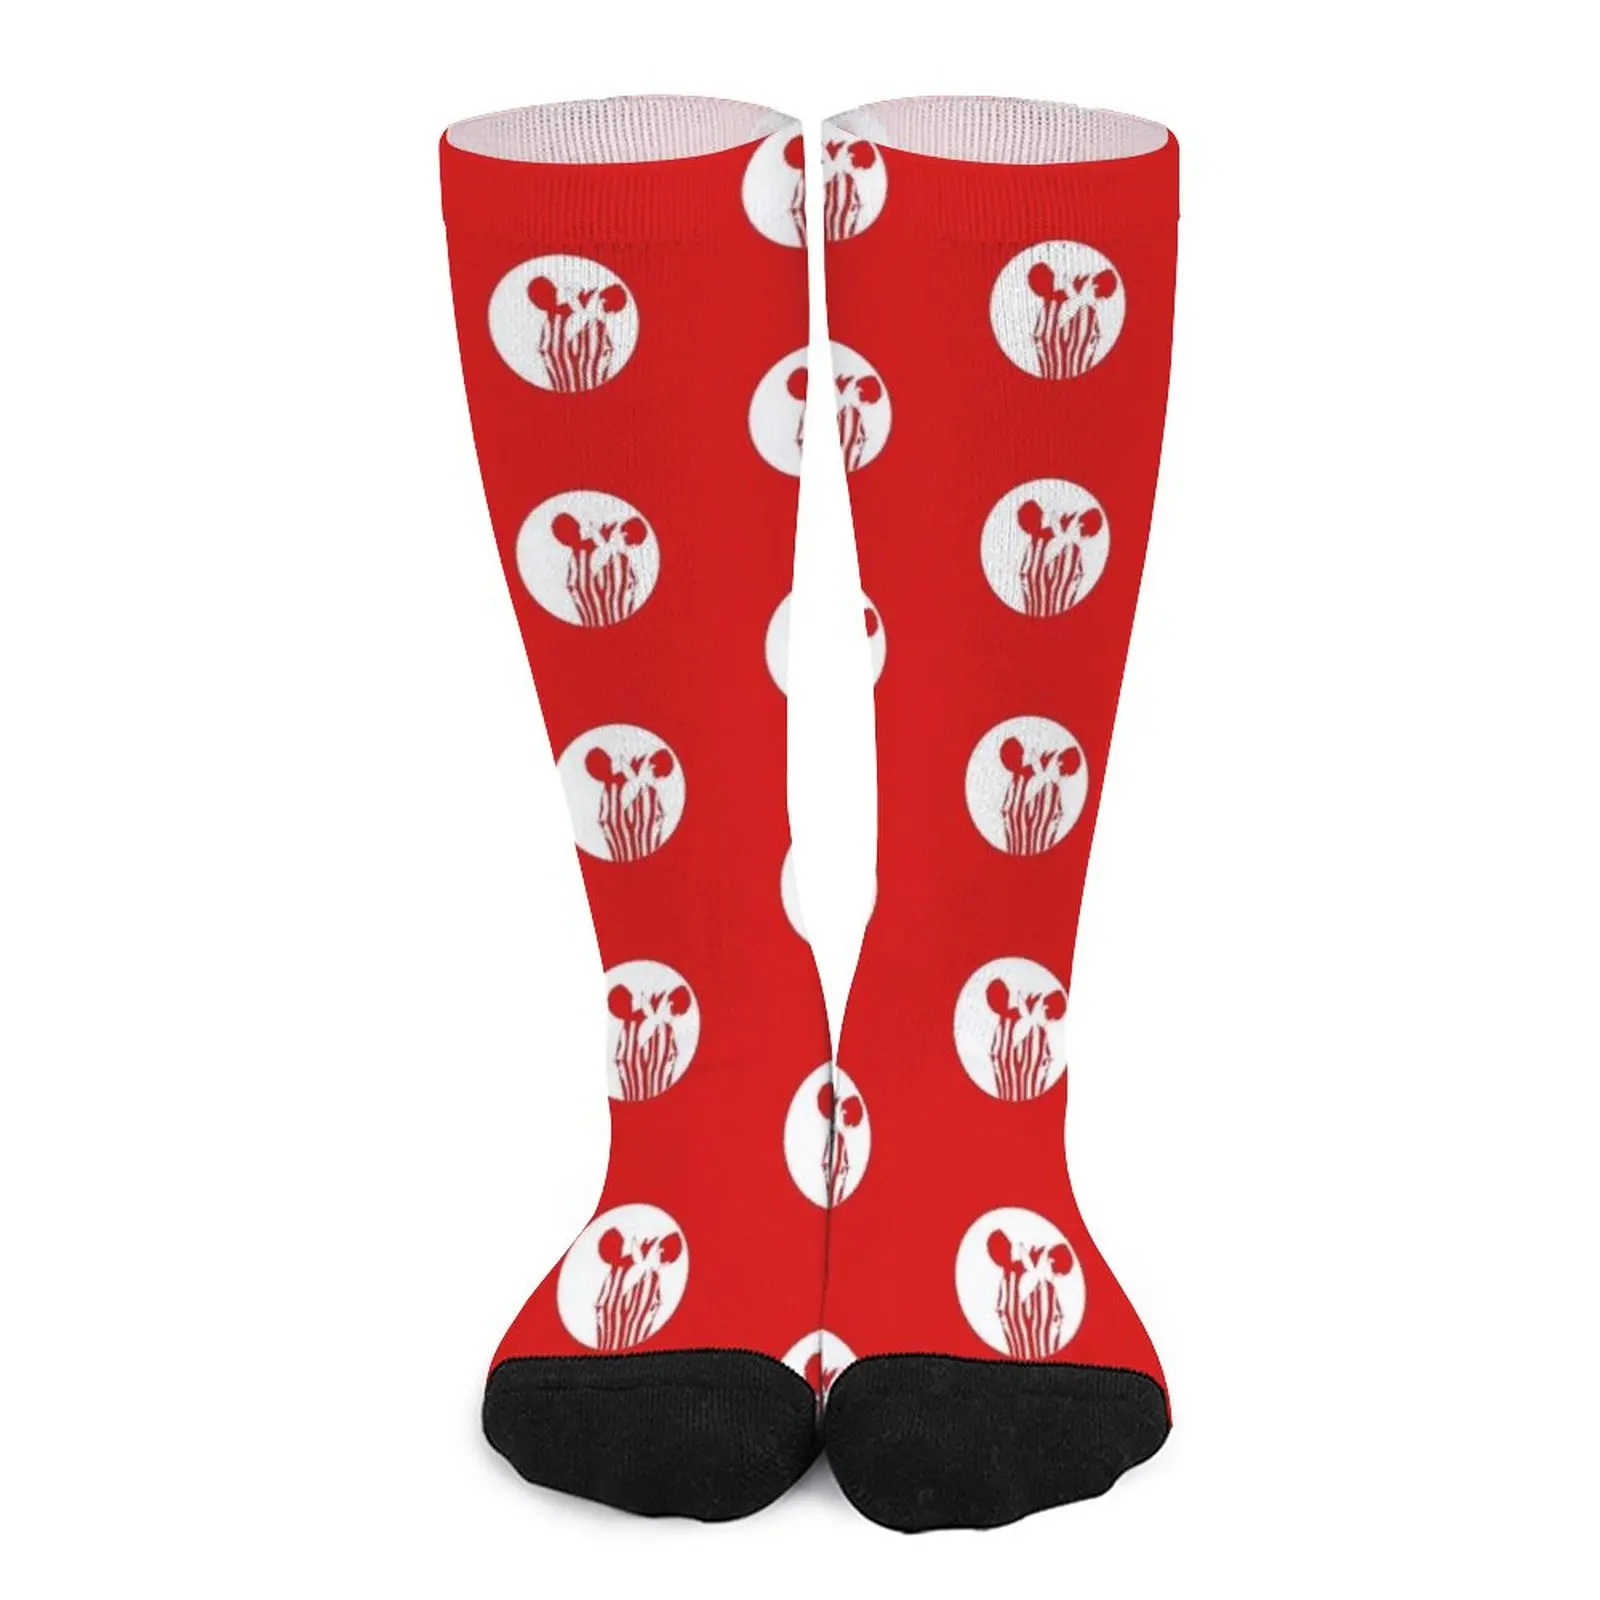 Red Ink Zebra Socks Men gift Children's socks Novelties luxury sock